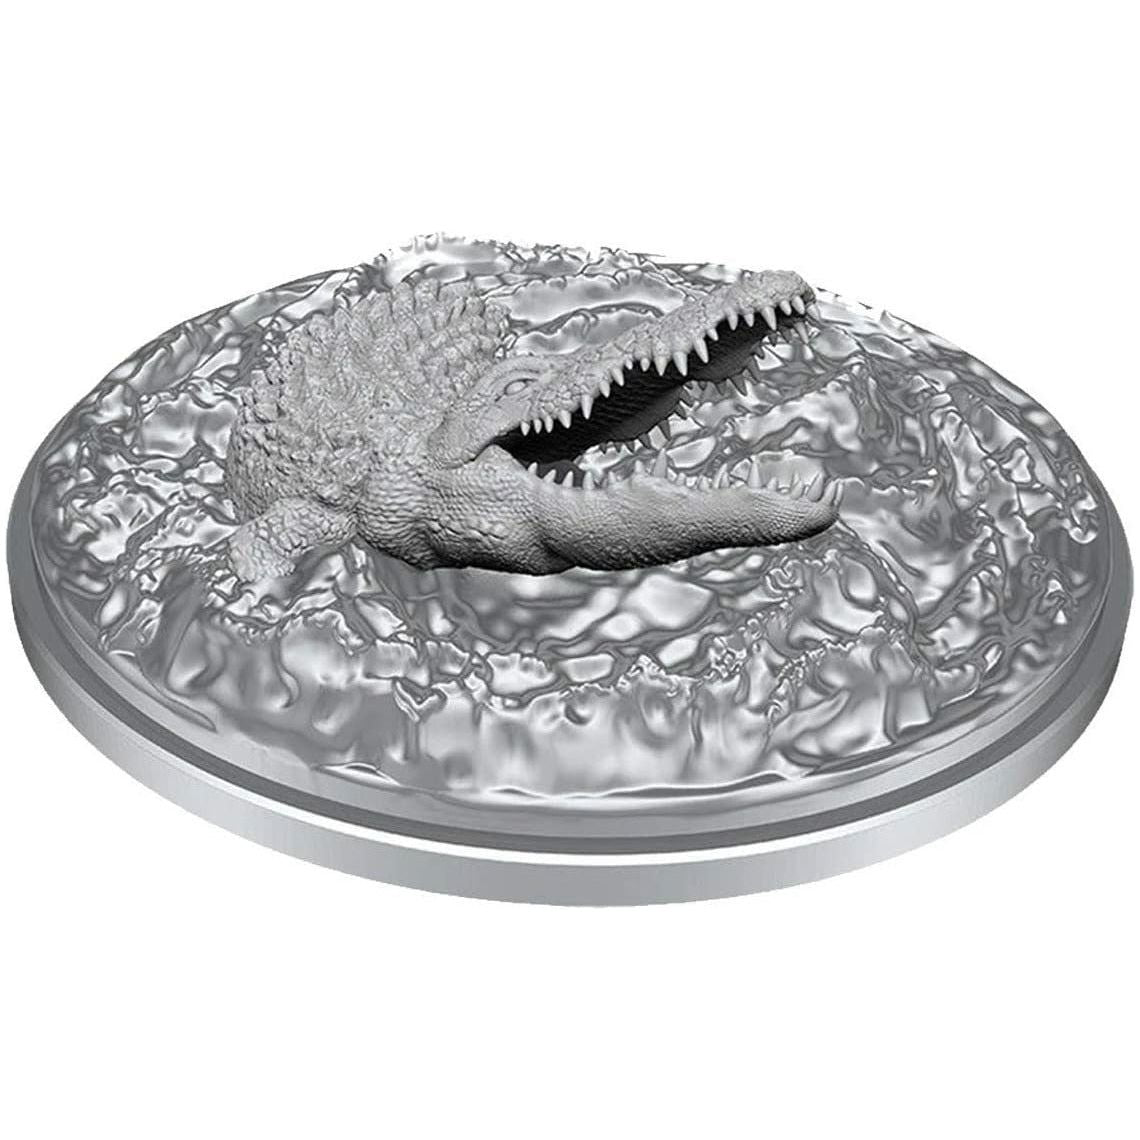 D&D - Minis - Nolzurs Marvelous Miniatures - Crocodile